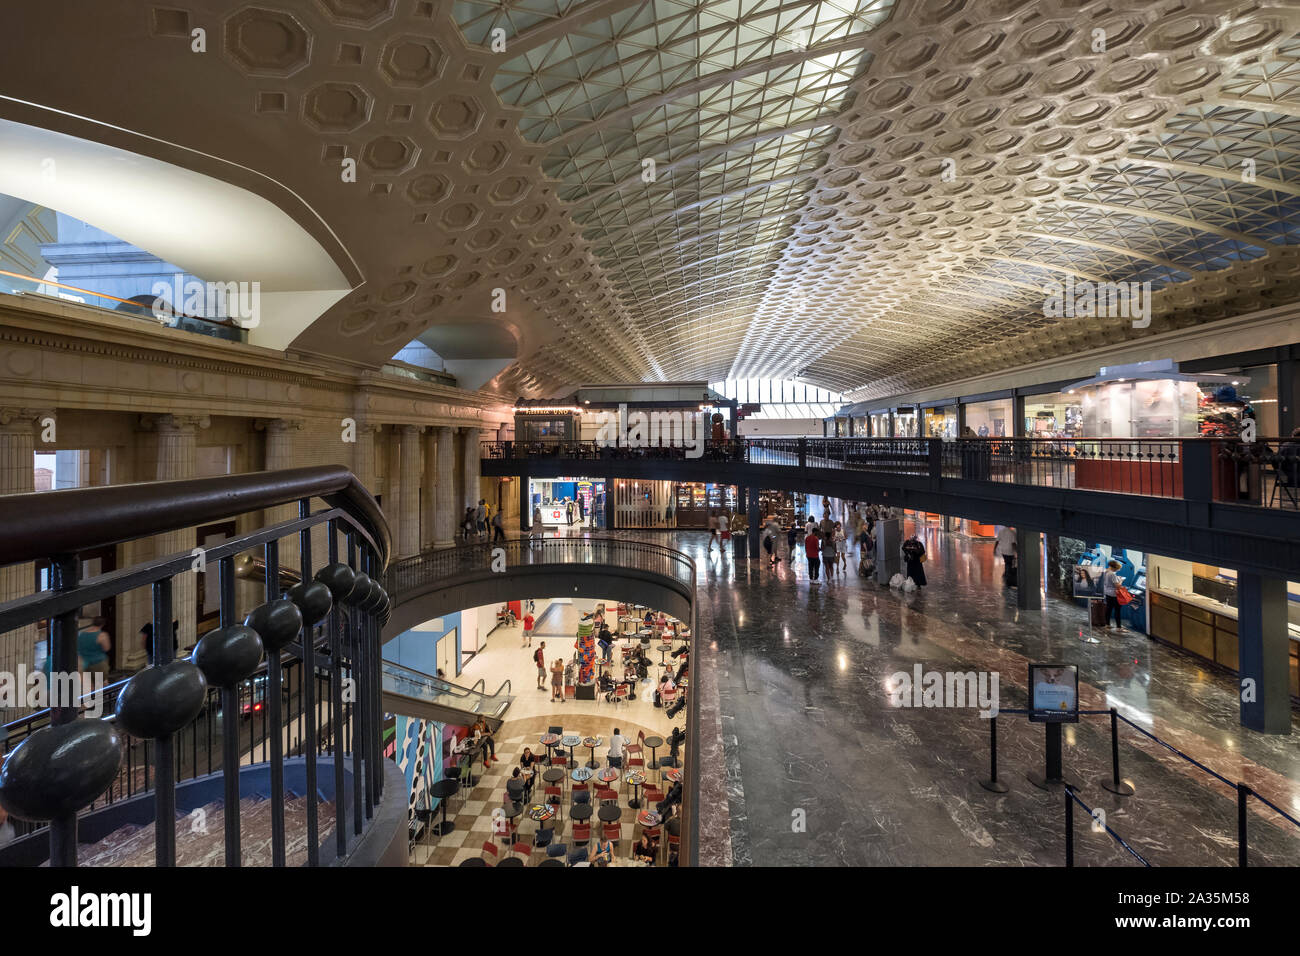 All'interno di Washington Union Station, Capitol Hill, Washington DC, Stati Uniti d'America Foto Stock